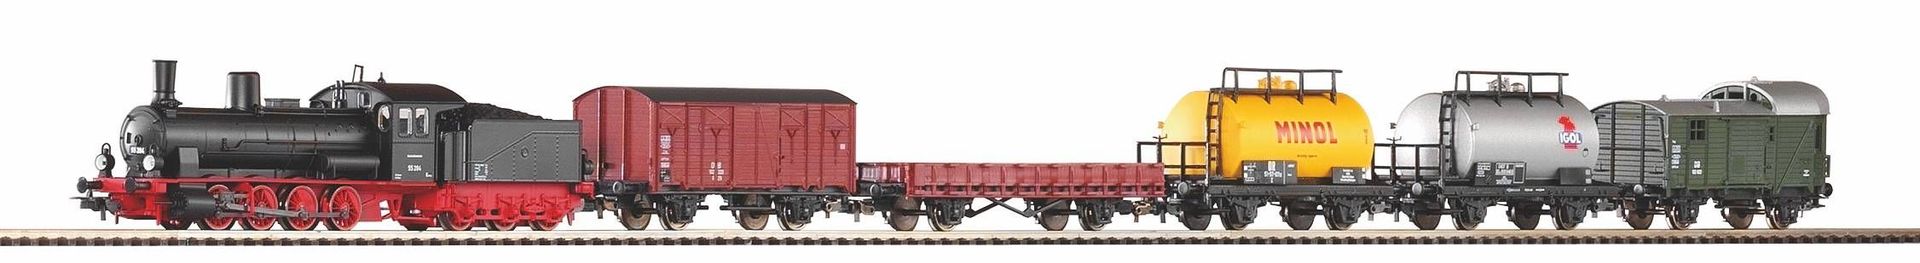 Piko 57123 - Startset Güterzug Dampflok G7 + 5 Wagen A-Gleis mit Bettung H0/GL